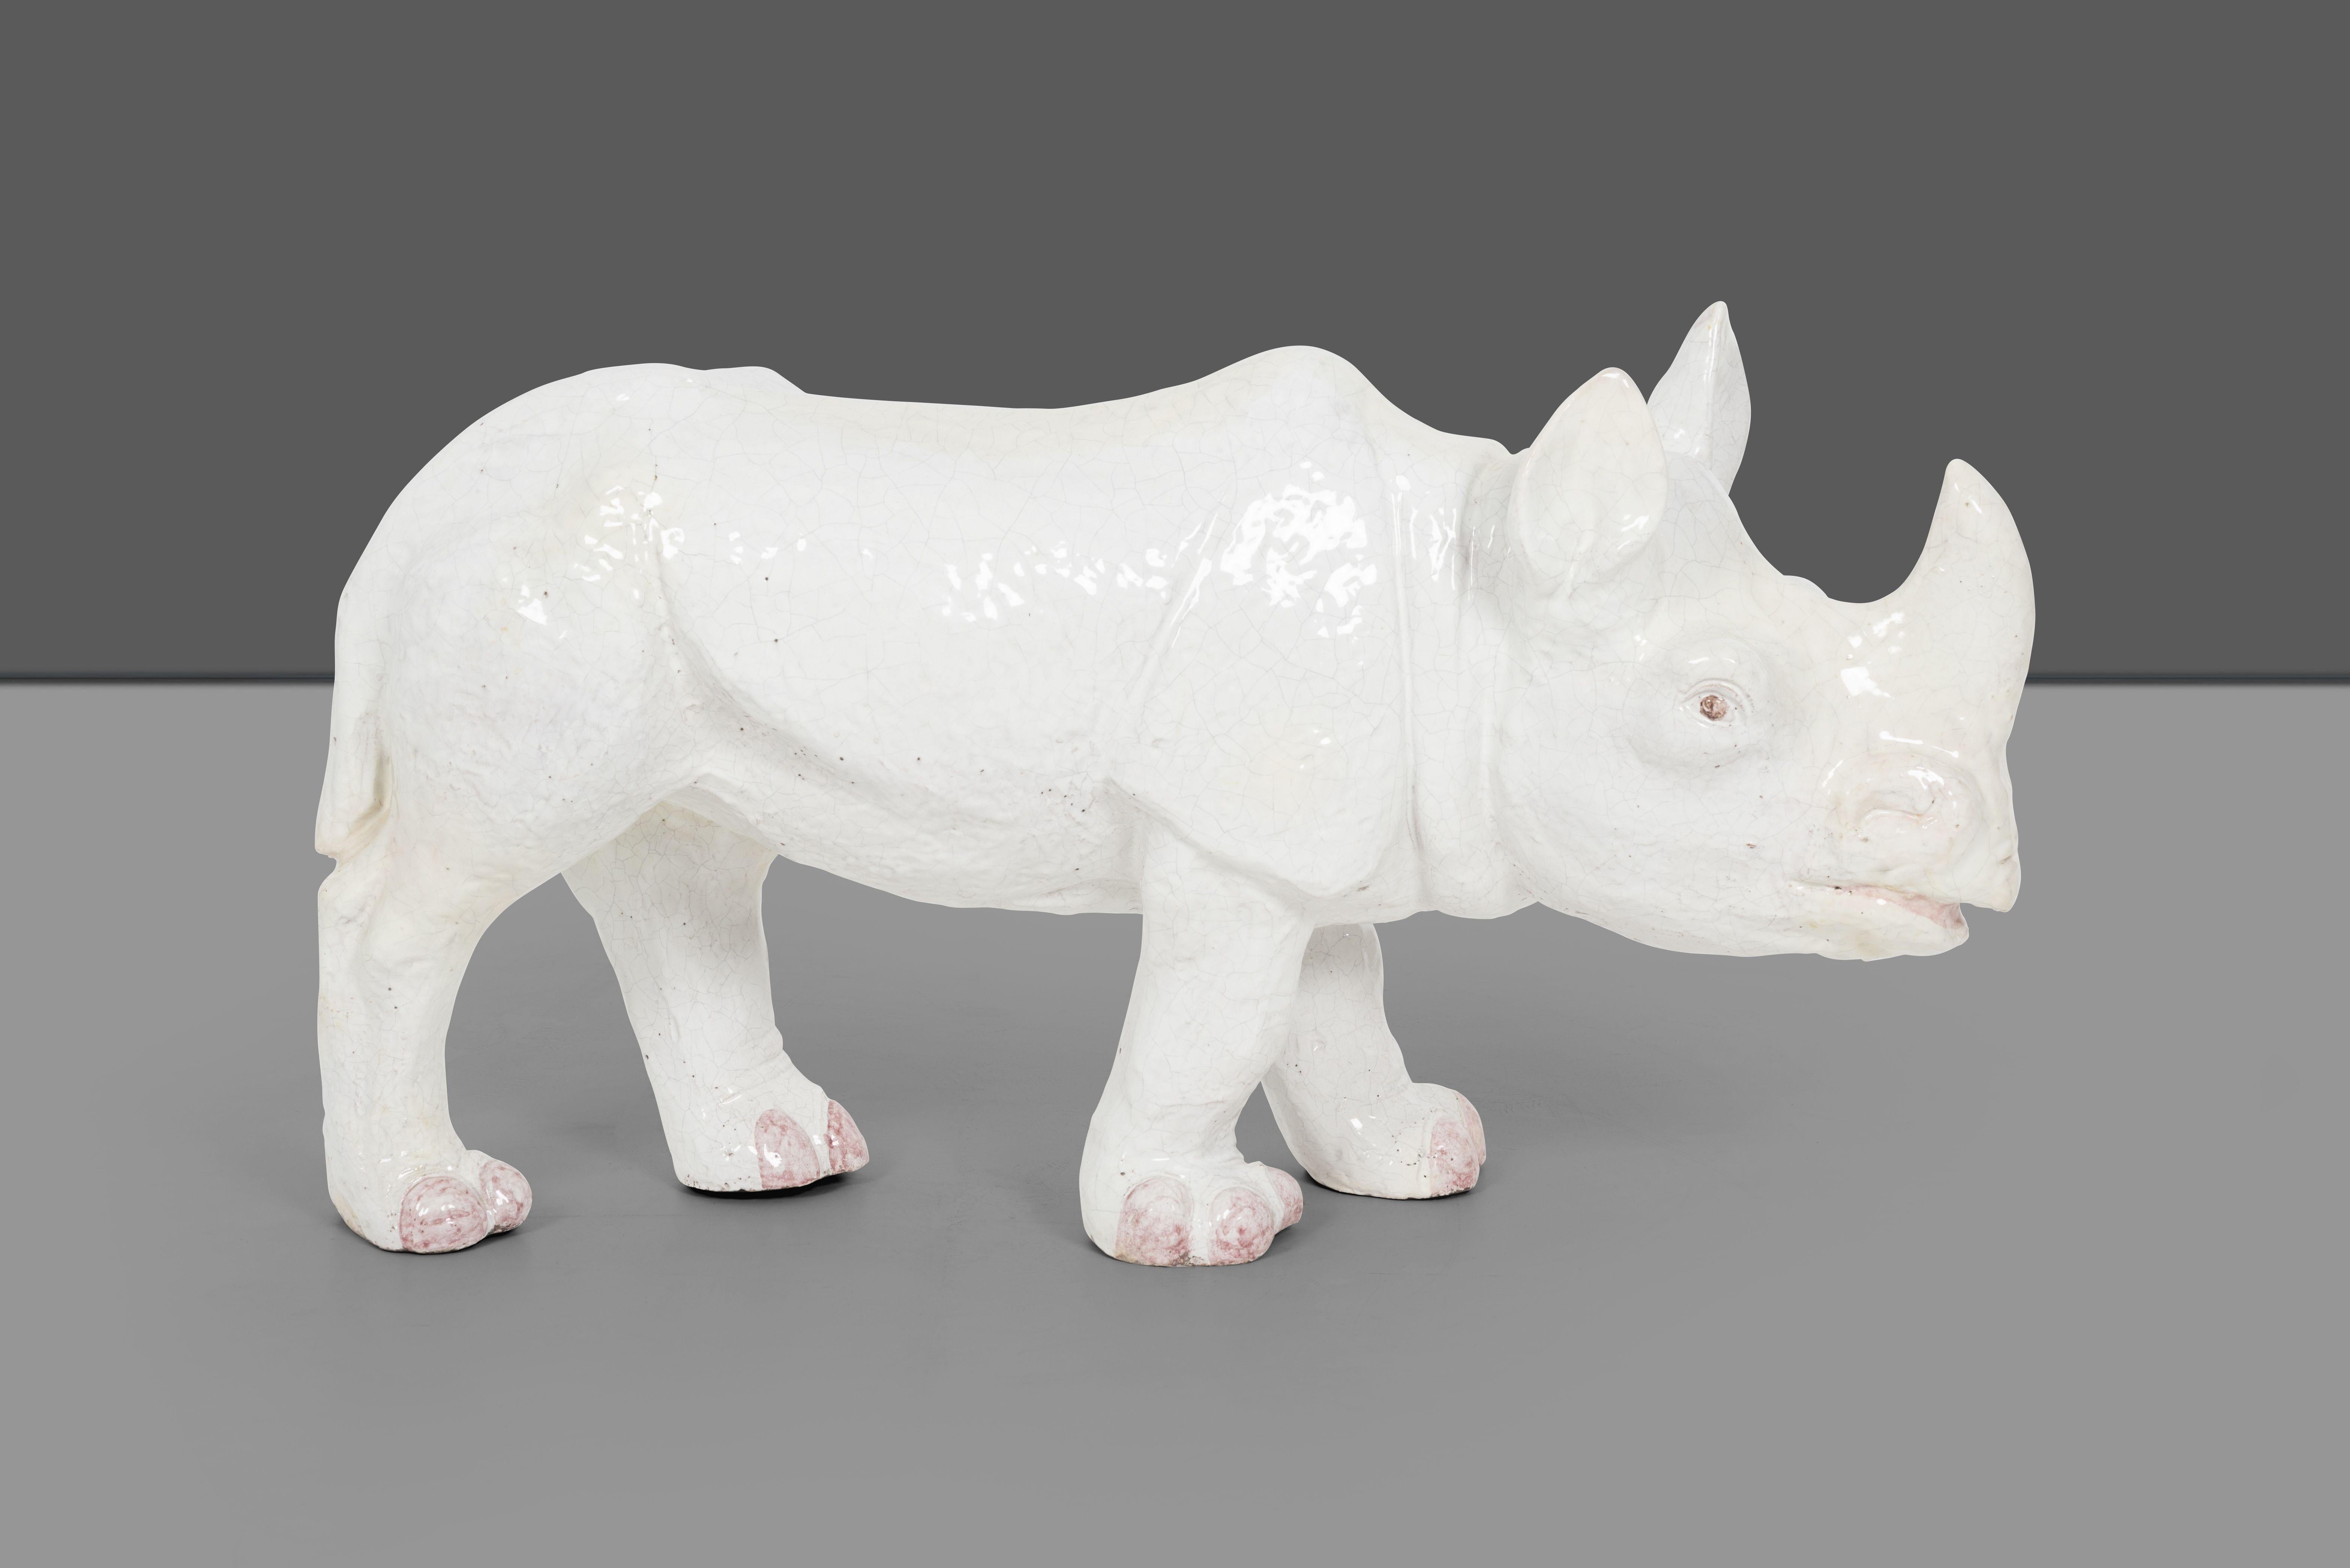 Rhinocéros en céramique de Trouvailles, France, présentant des craquelures naturelles, des orteils, des yeux et une bouche peints.